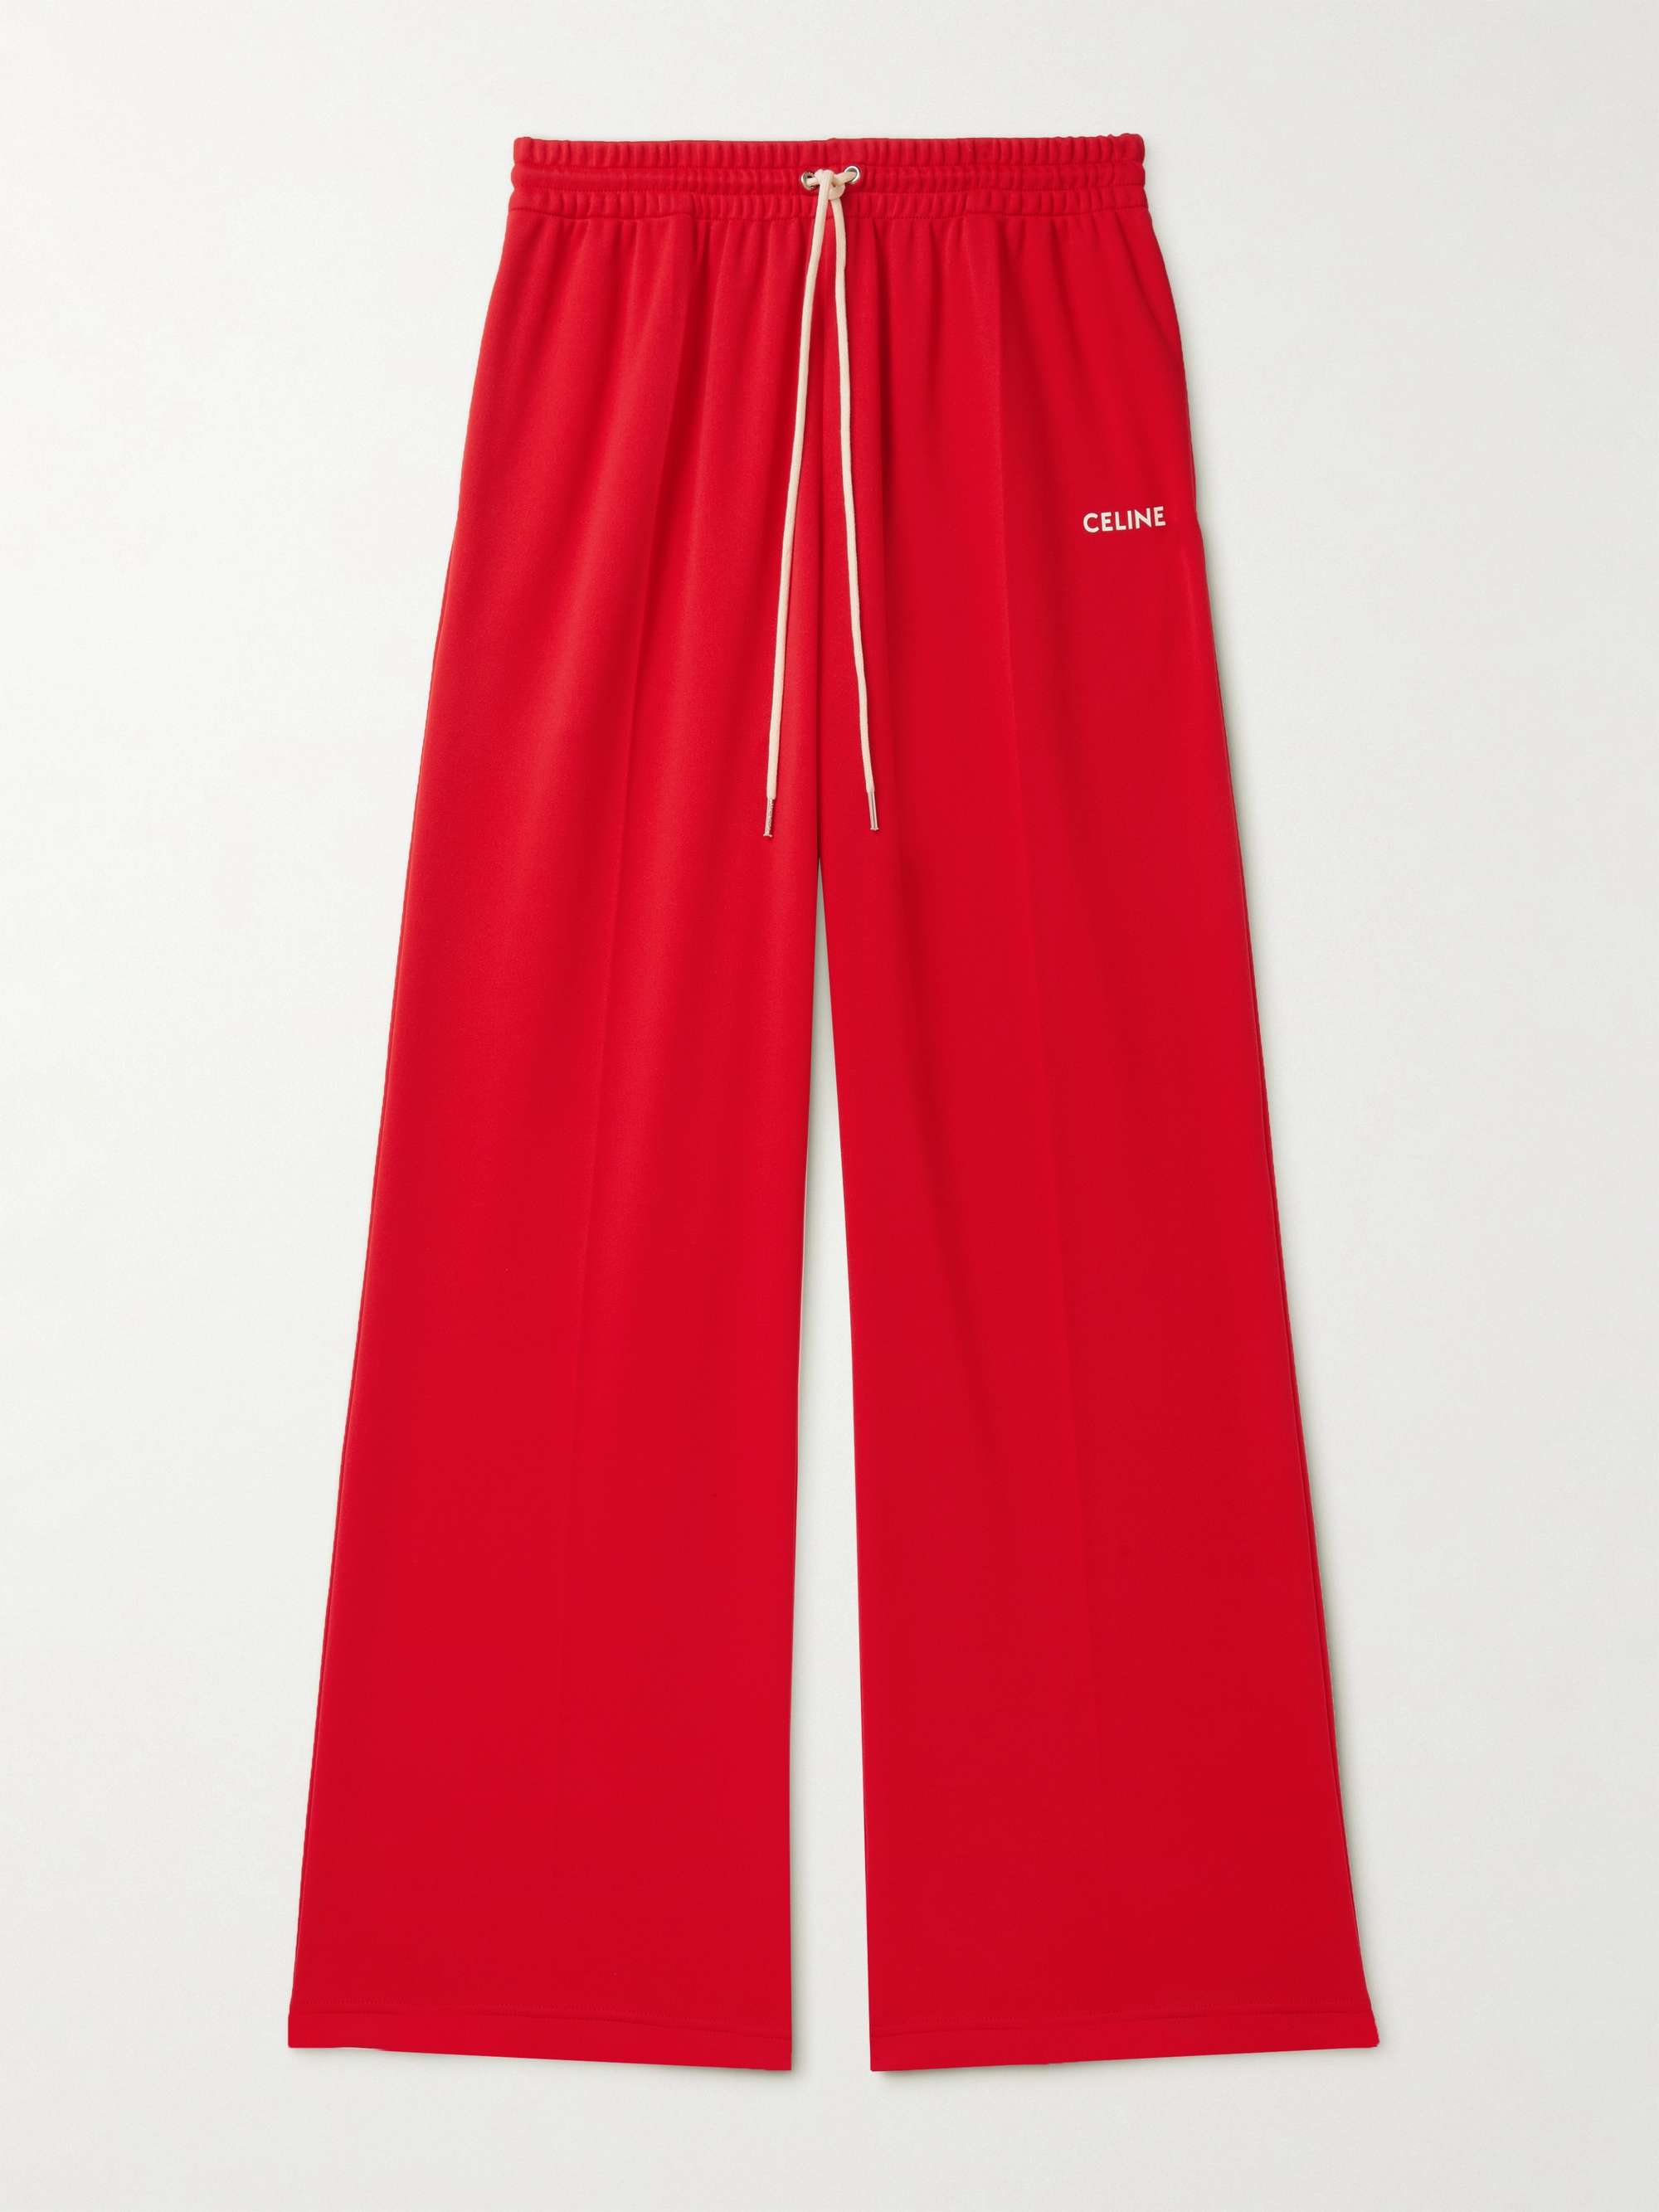 셀린느 옴므 트랙 팬츠 CELINE HOMME Straight-Leg Logo-Print Jersey Track Pants,Red